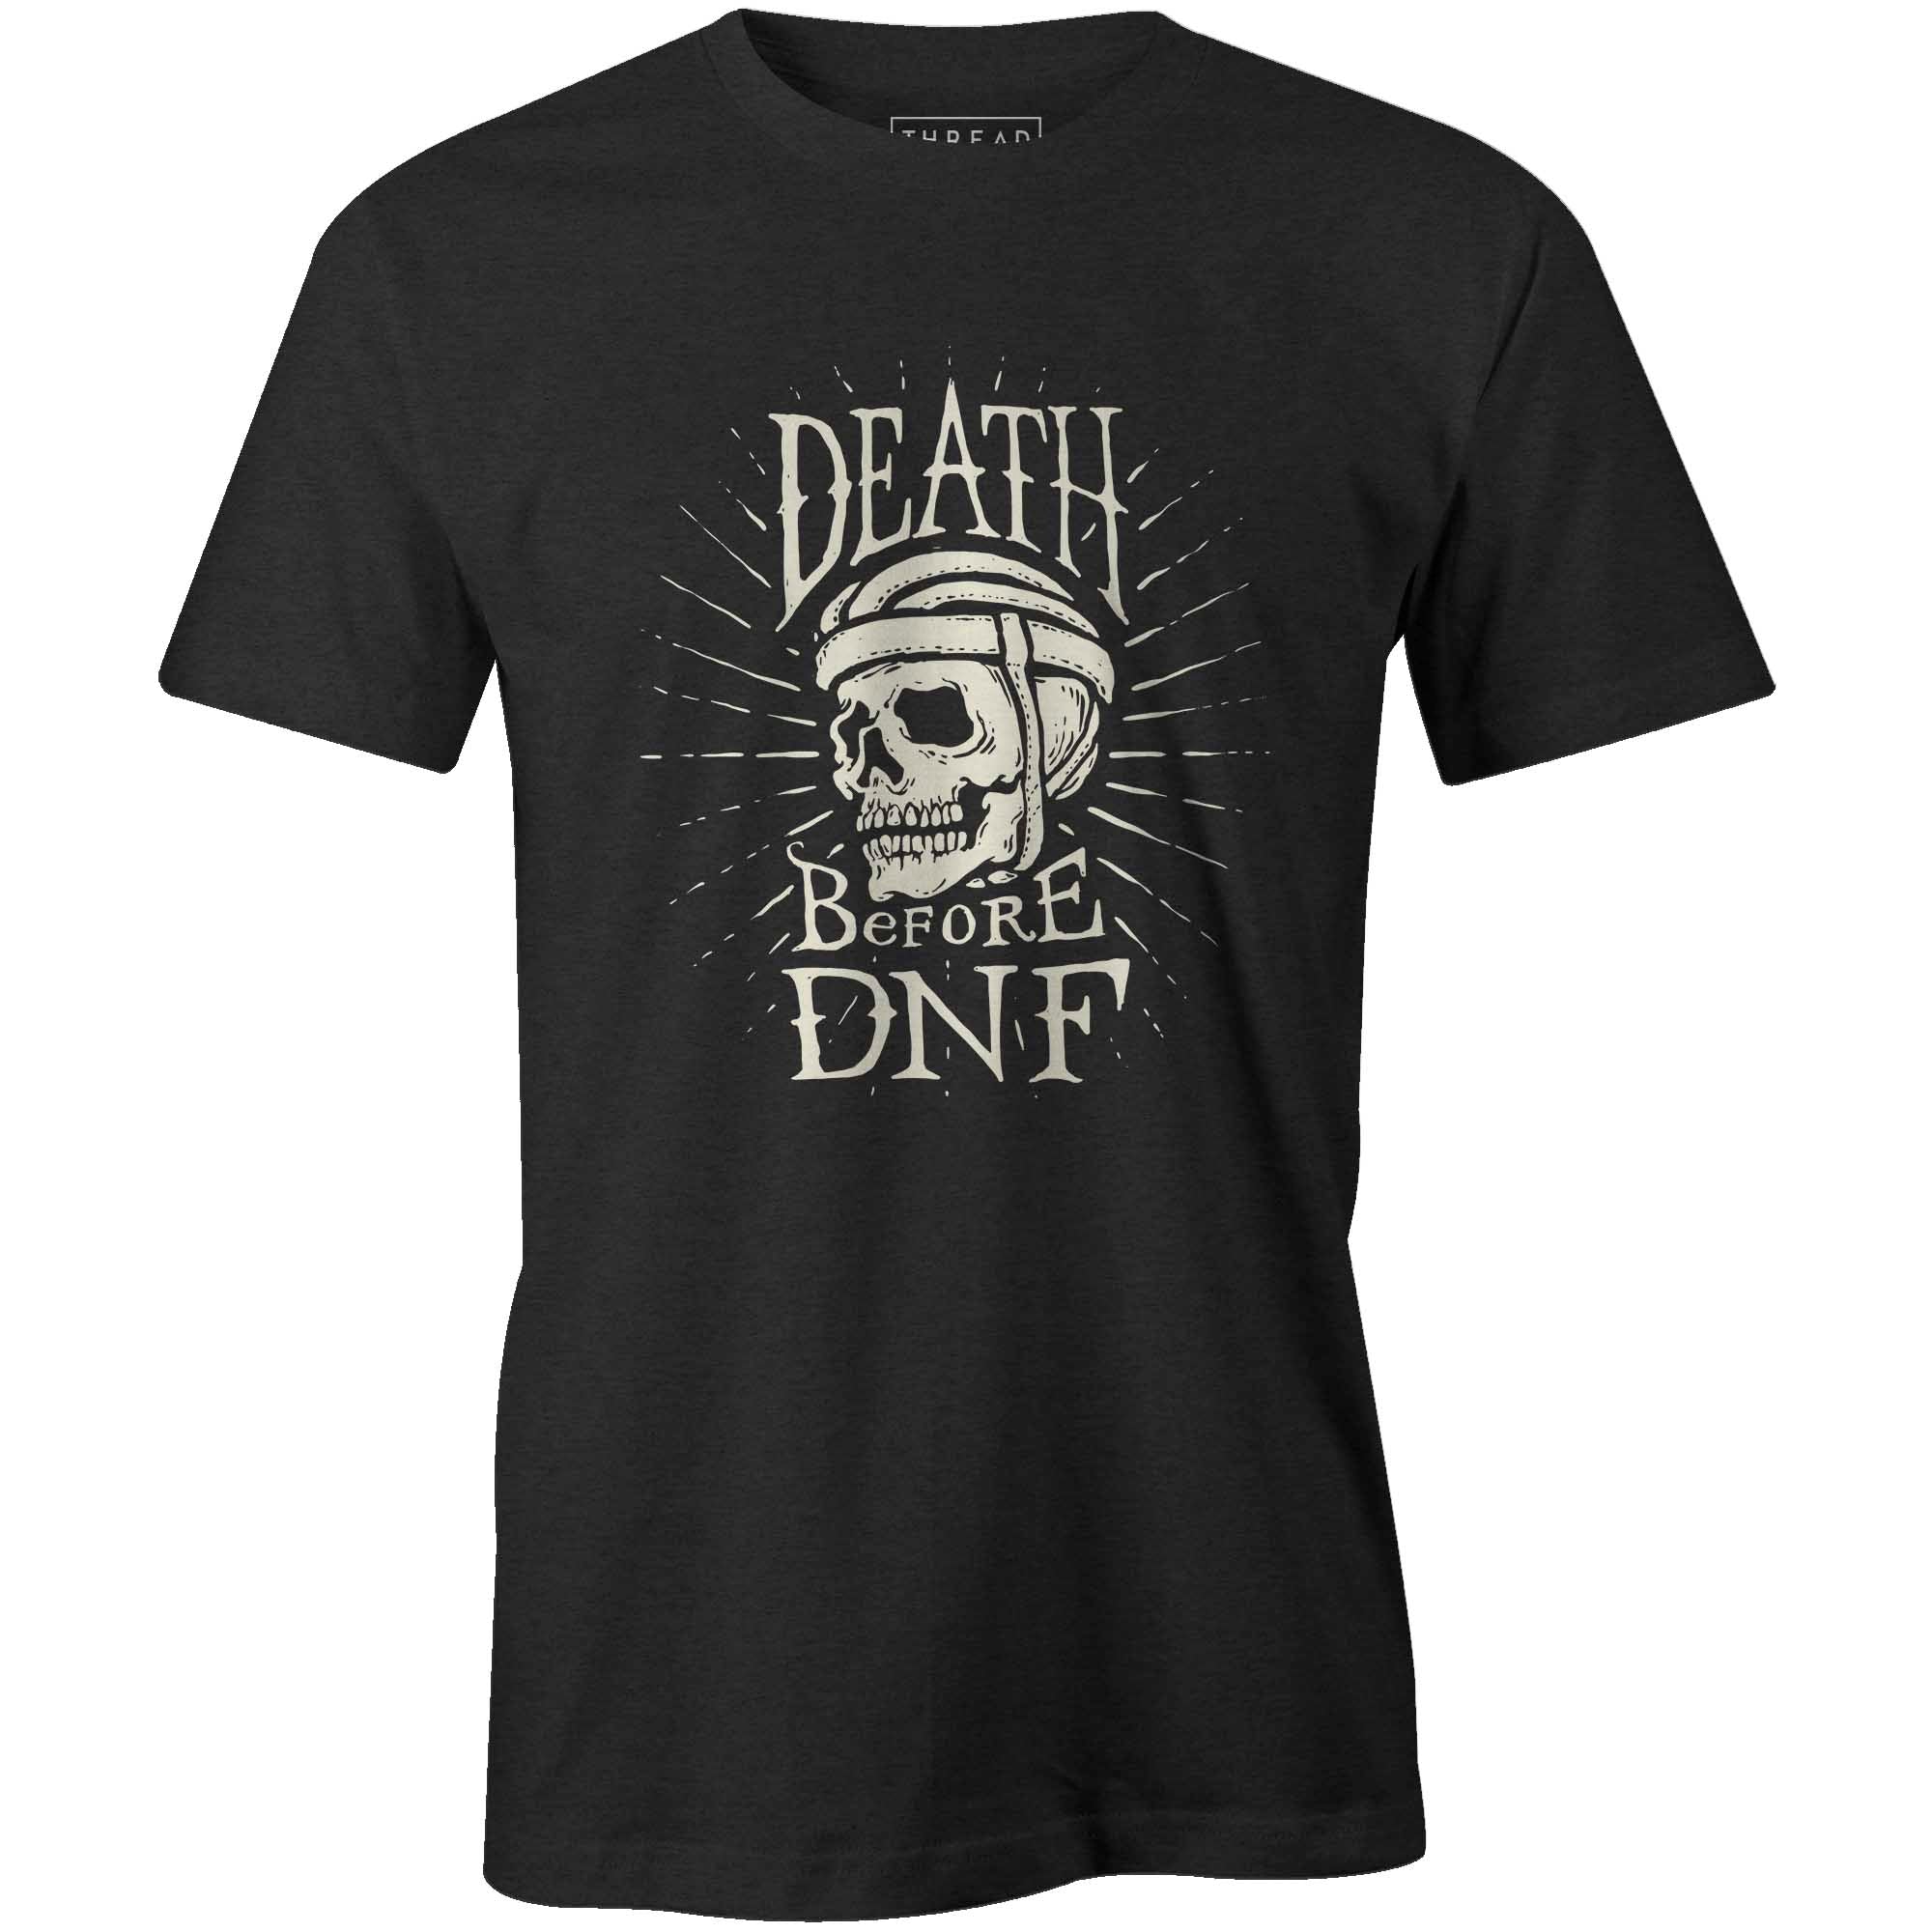 Men's T-shirt - Never DNF